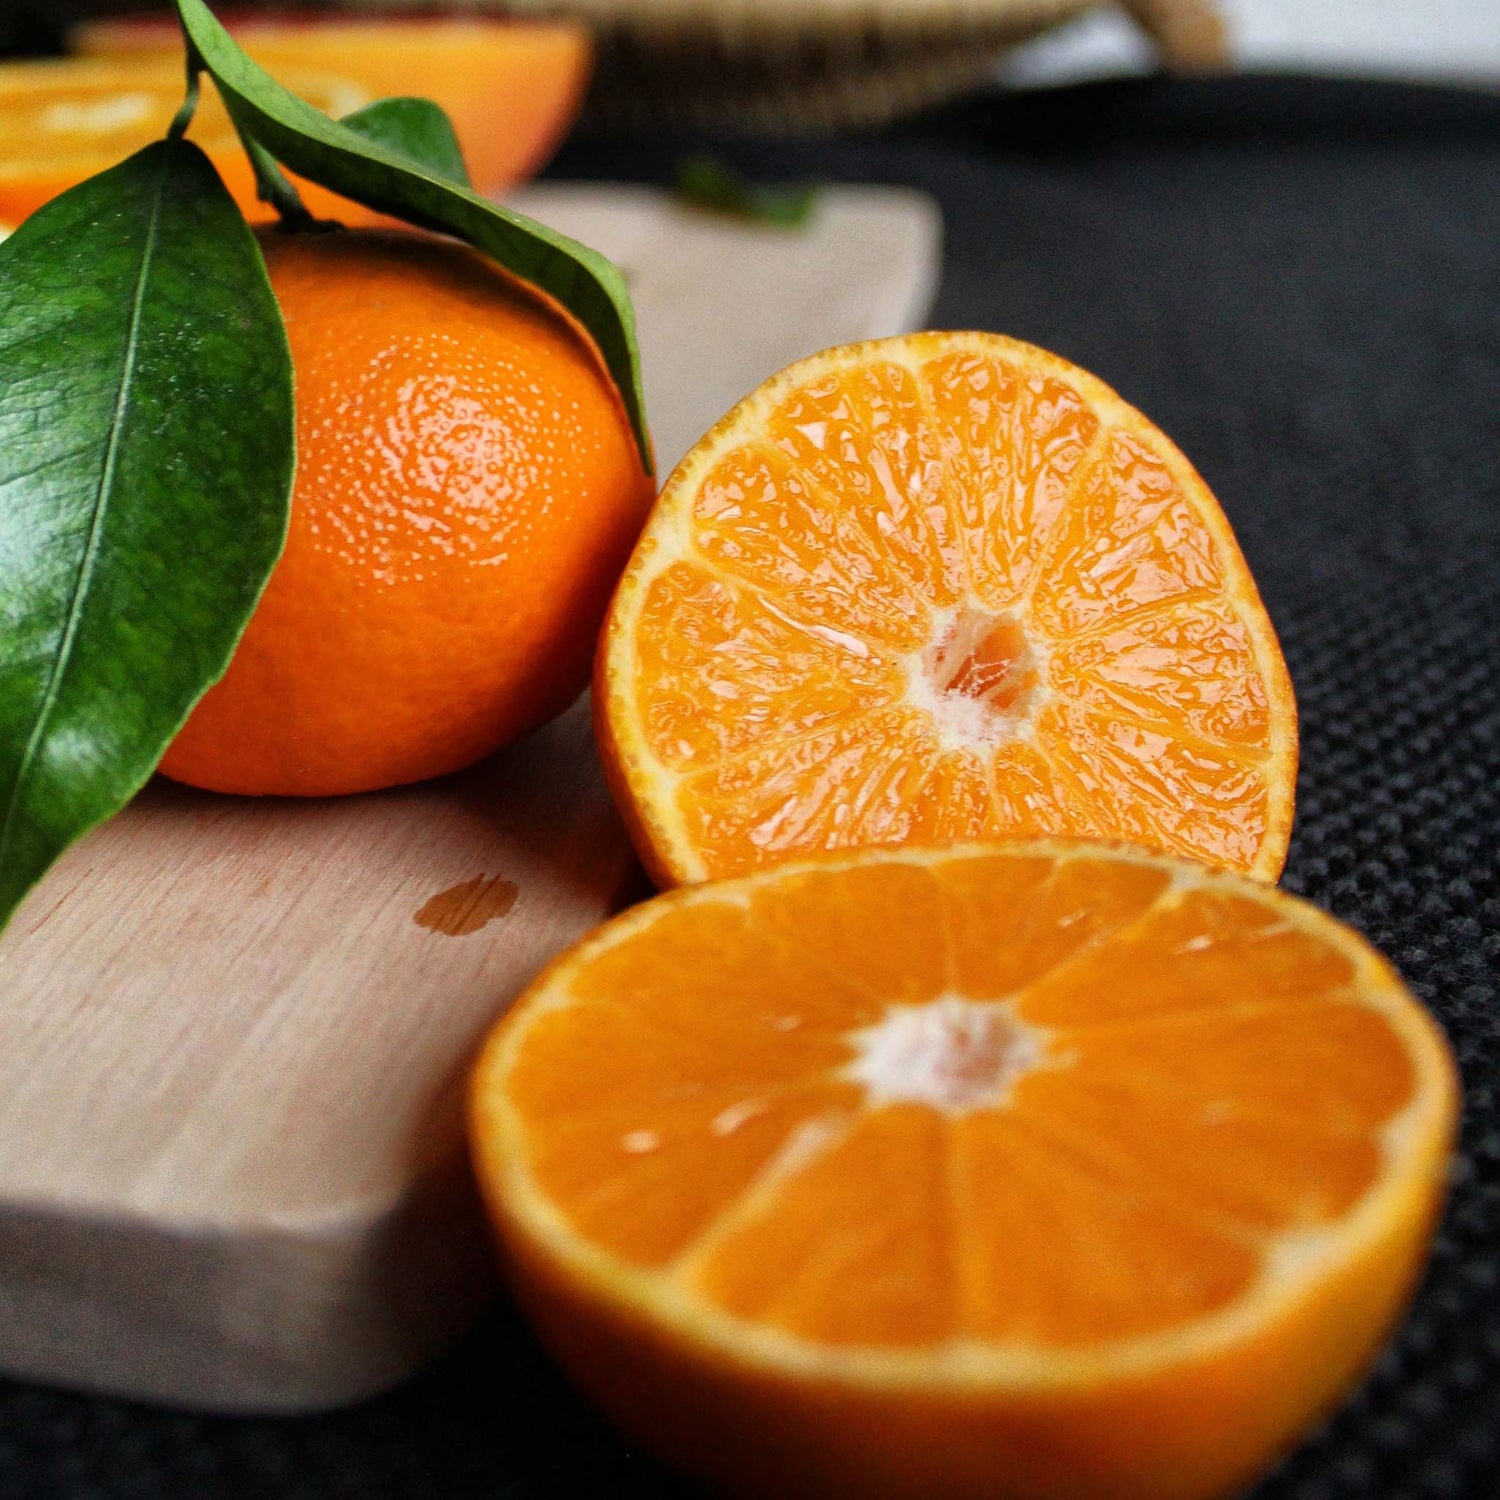 Sliced mandarins on cutting board.